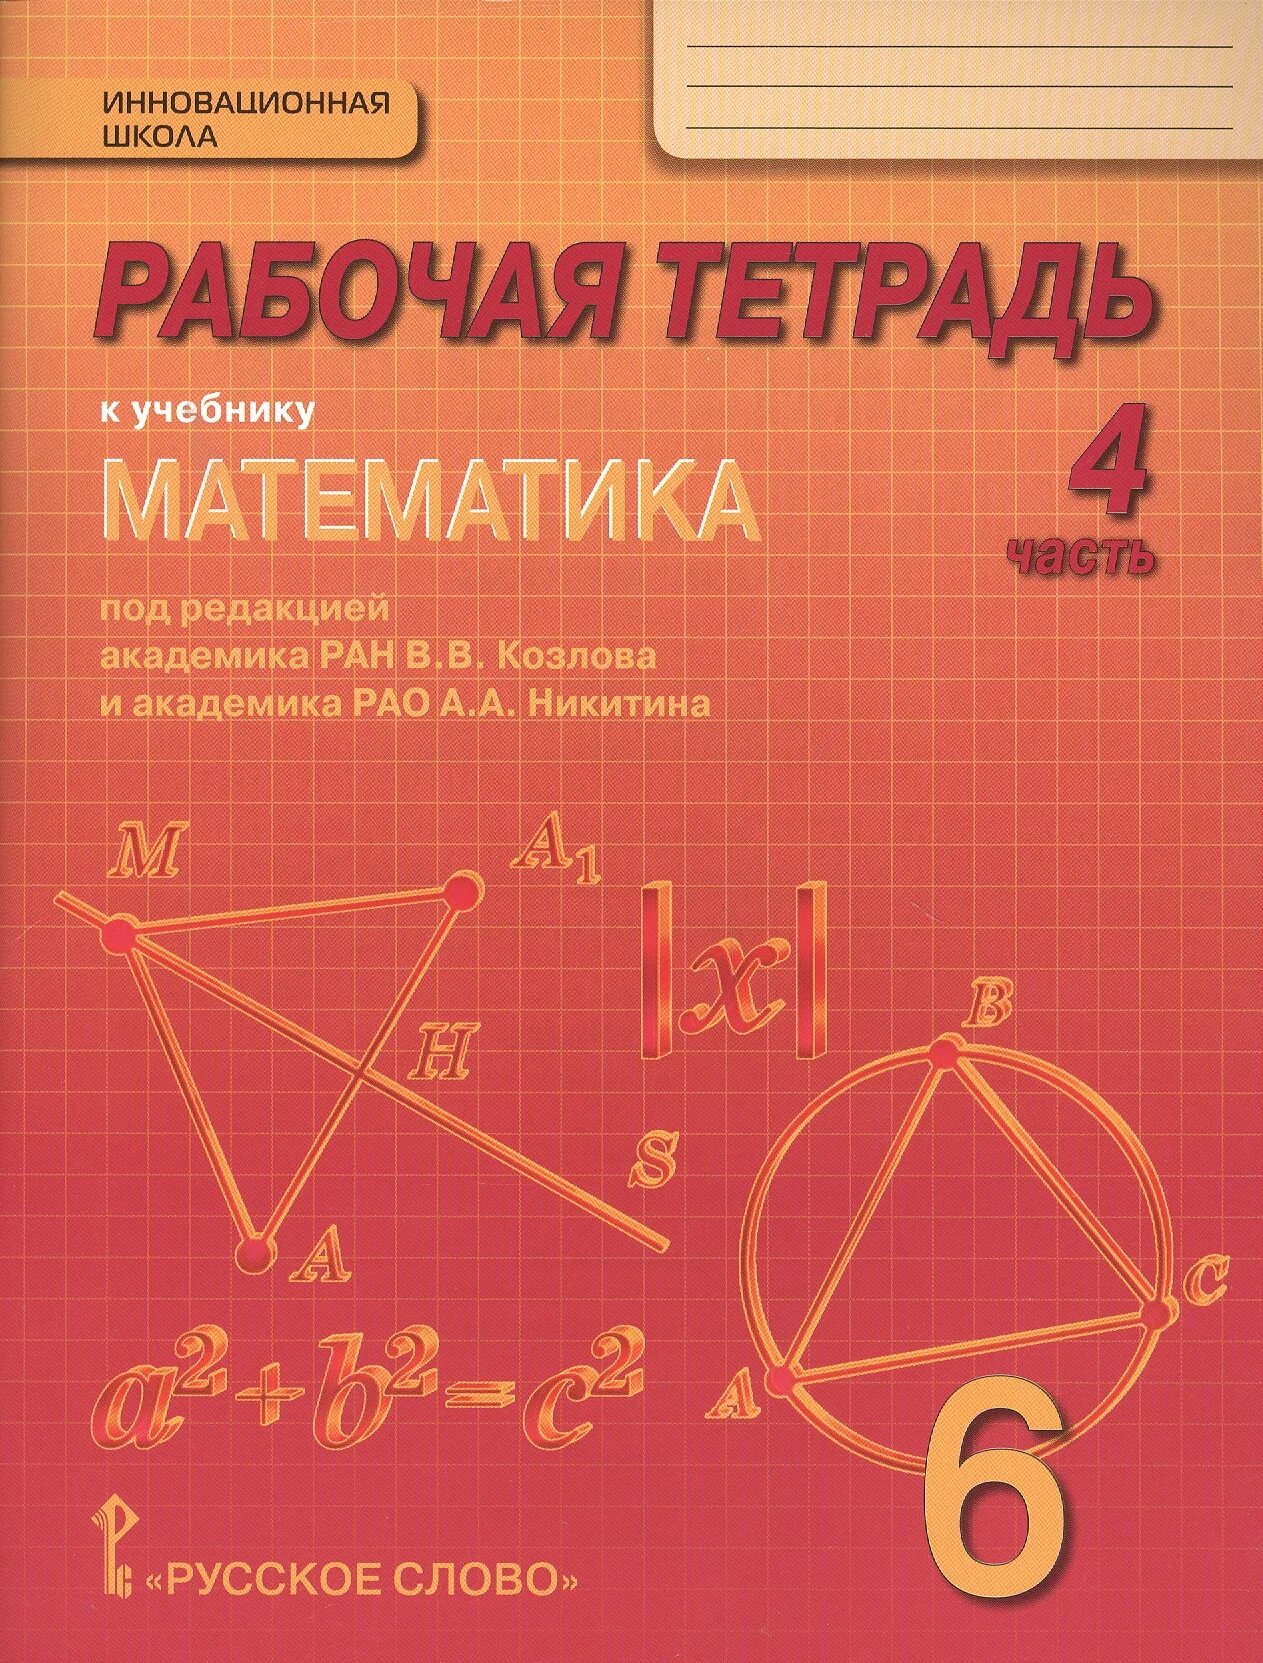 Учебник математики. Книга математика. Дидактическая тетрадь по математике. Учебник математики 6 класс.